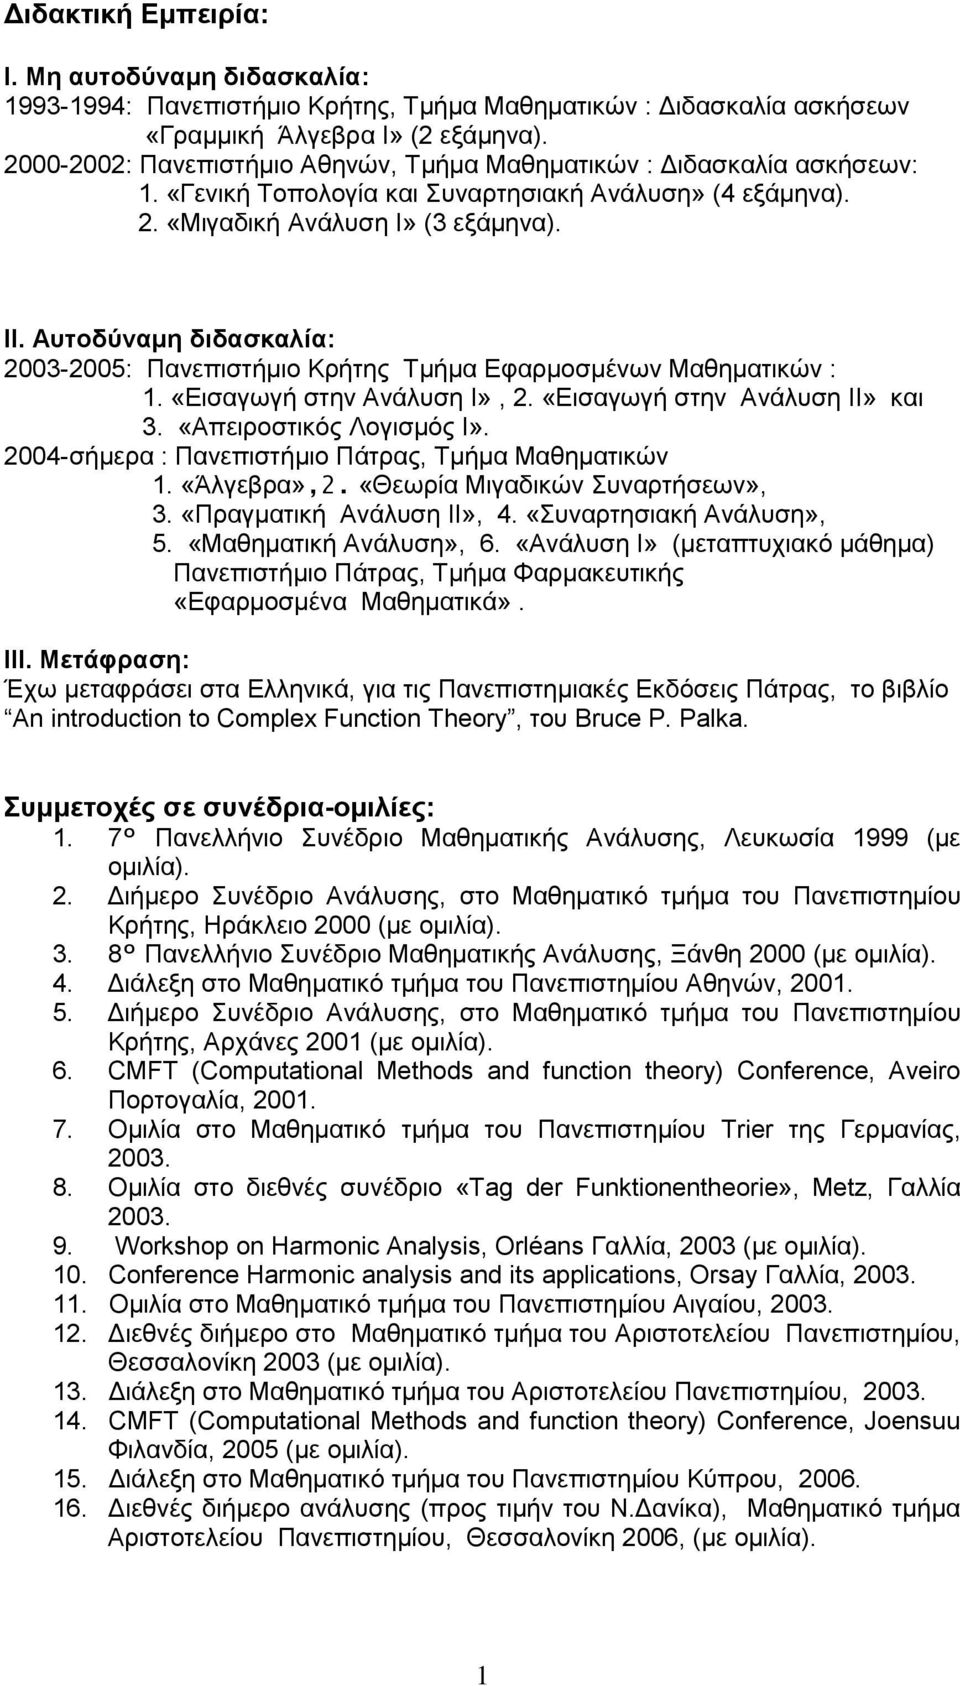 Αυτοδύναμη διδασκαλία: 2003-2005: Πανεπιστήμιο Κρήτης Tμήμα Εφαρμοσμένων Μαθηματικών : 1. «Εισαγωγή στην Ανάλυση I», 2. «Εισαγωγή στην Ανάλυση II» και 3. «Απειροστικός Λογισμός I».